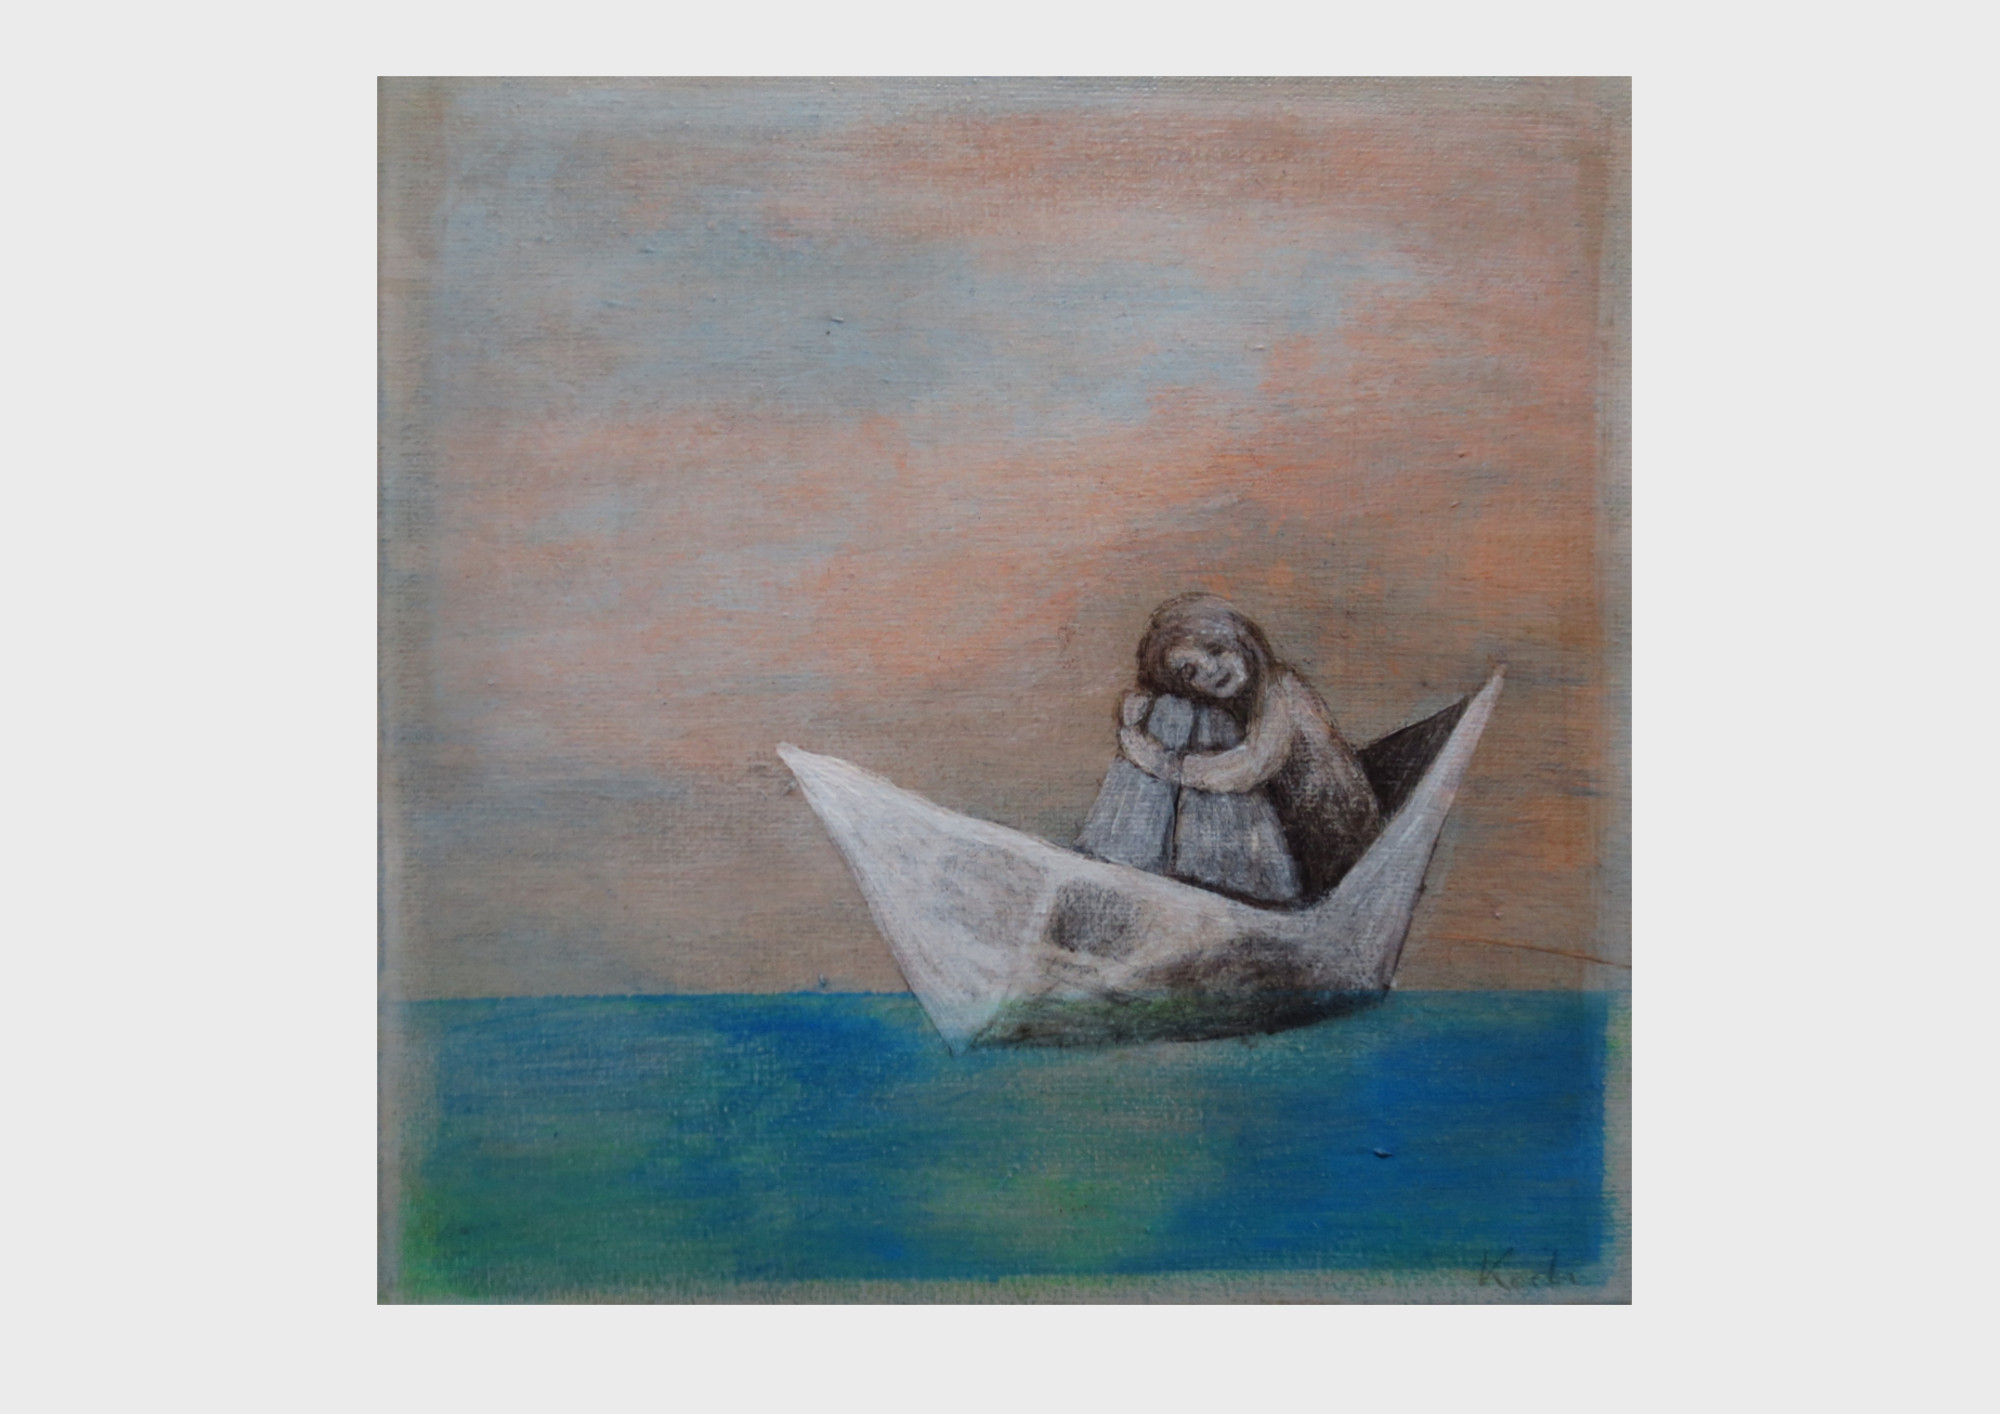 Reise im Papierschiff: Ein kleines Mädchen sitzt in ihrem Boot aus Papier, sie treibt über das türkise und Ozean blaue Meer, vor einem Himmel in orange Tönen.